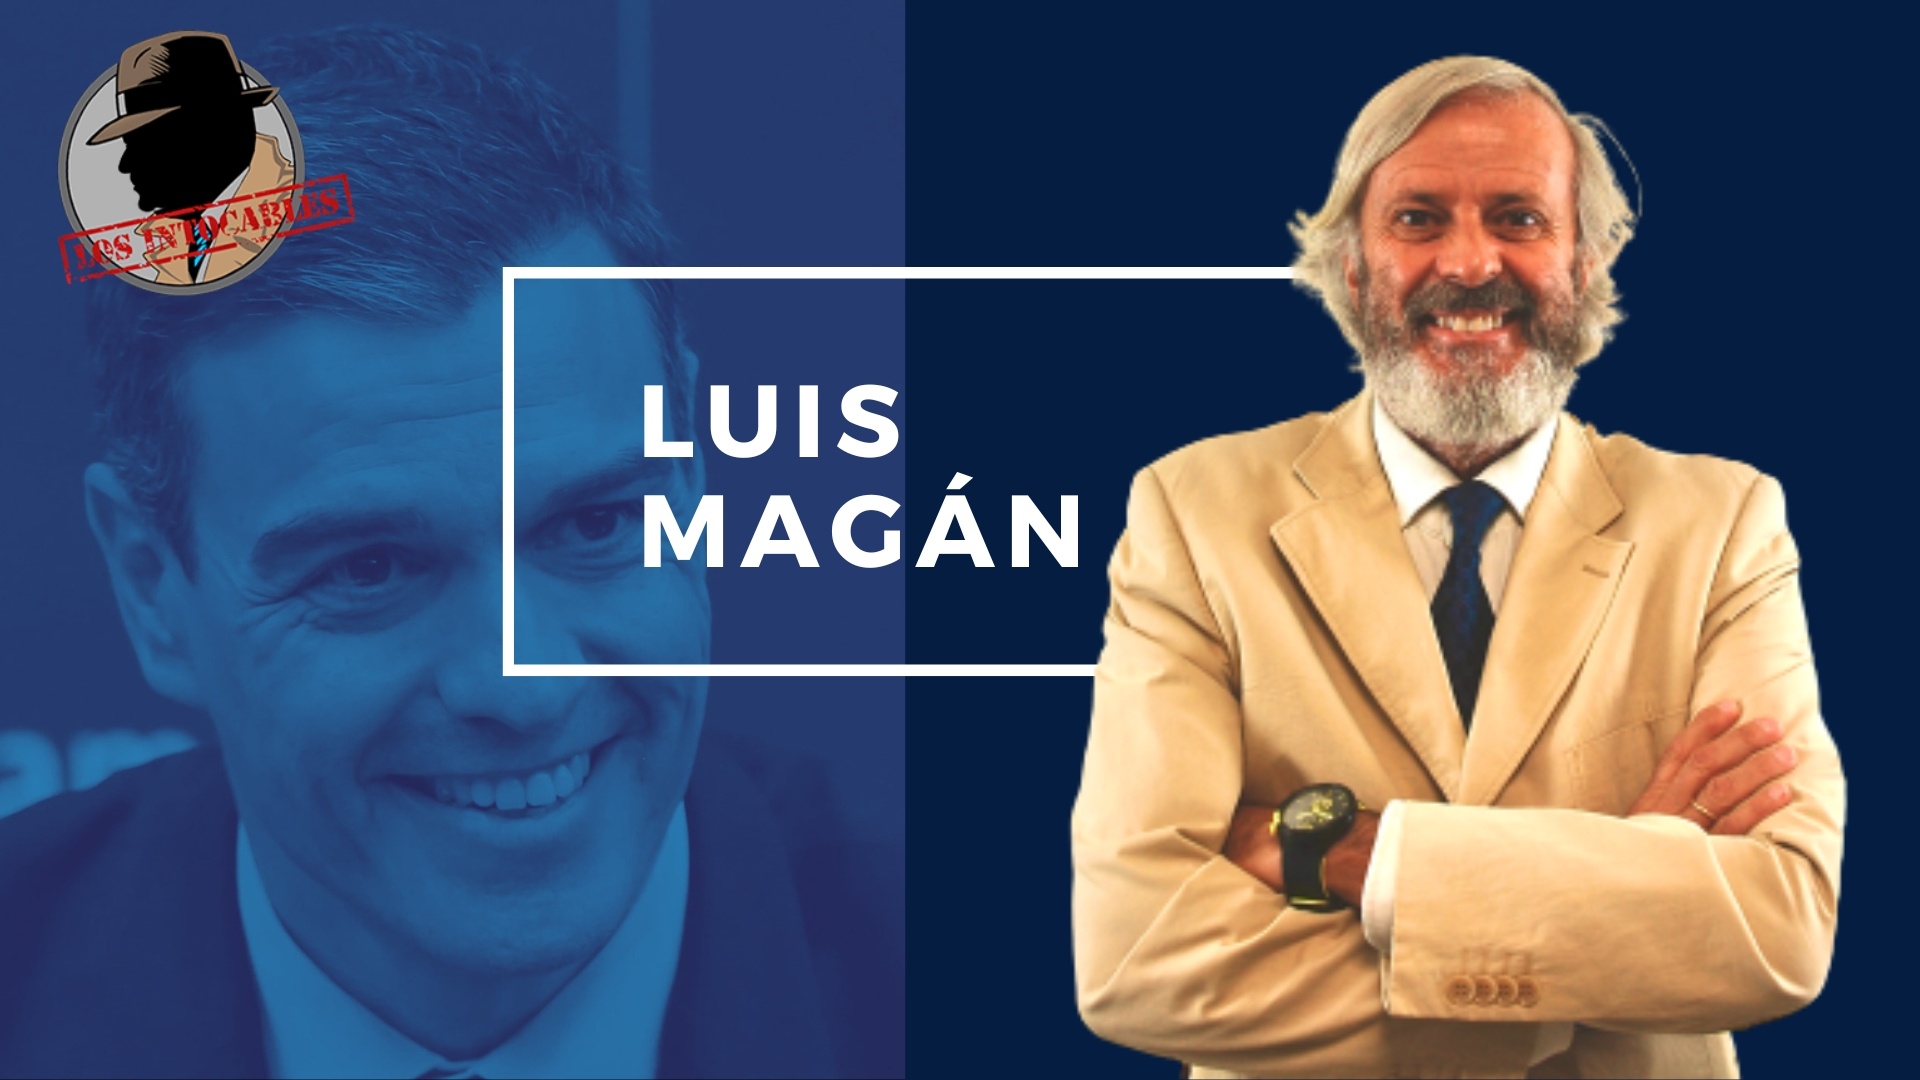 LUIS MAGAN